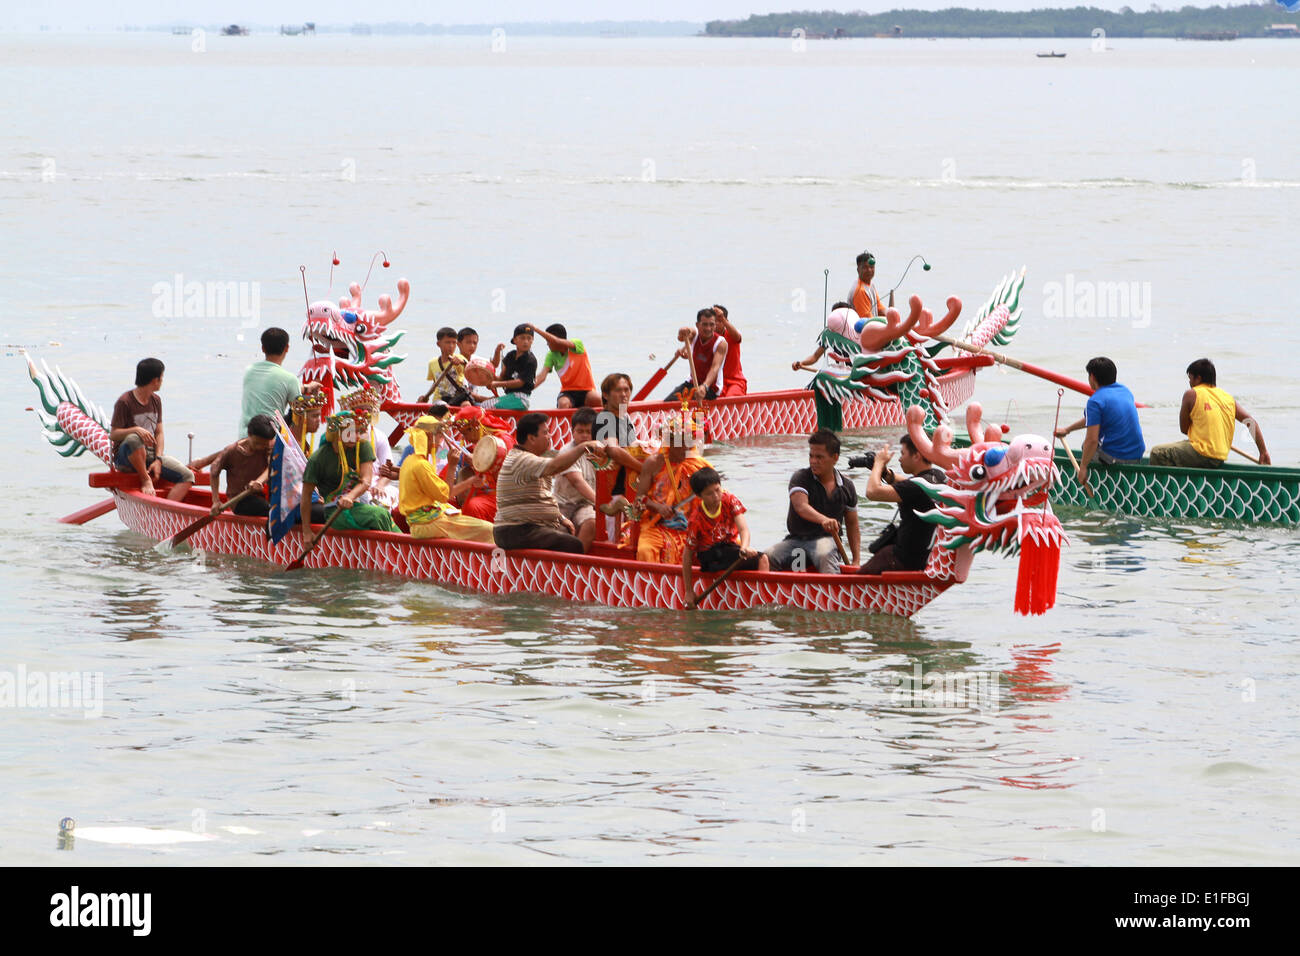 Bintan, Indonésie. 1er juin 2014. 2 juin 2014 : l'Indonésie a célébré chinois Duangwu avec dieux chinois habillés Festival le 2 juin 2014 à Bintan, Sumatra, Indonésie. Duanwu Festival ou le bateau dragon est un jour férié et traditionnelles originaires de Chine. Duanwu Festival de la plupart de l'alimentation implique célébrations zongzi (sticky rice treats enveloppés dans des feuilles de bambou), de boire du vin (réalgar é'"é"ƒé…', xiÃ³nghuÃ¡ngjiÇ"), et des courses de bateaux dragon. Le soleil est considéré comme étant à son plus fort autour de la période du solstice d'été, comme la lumière du jour dans l'hémisphère nord est la plus longue. Le soleil, Banque D'Images